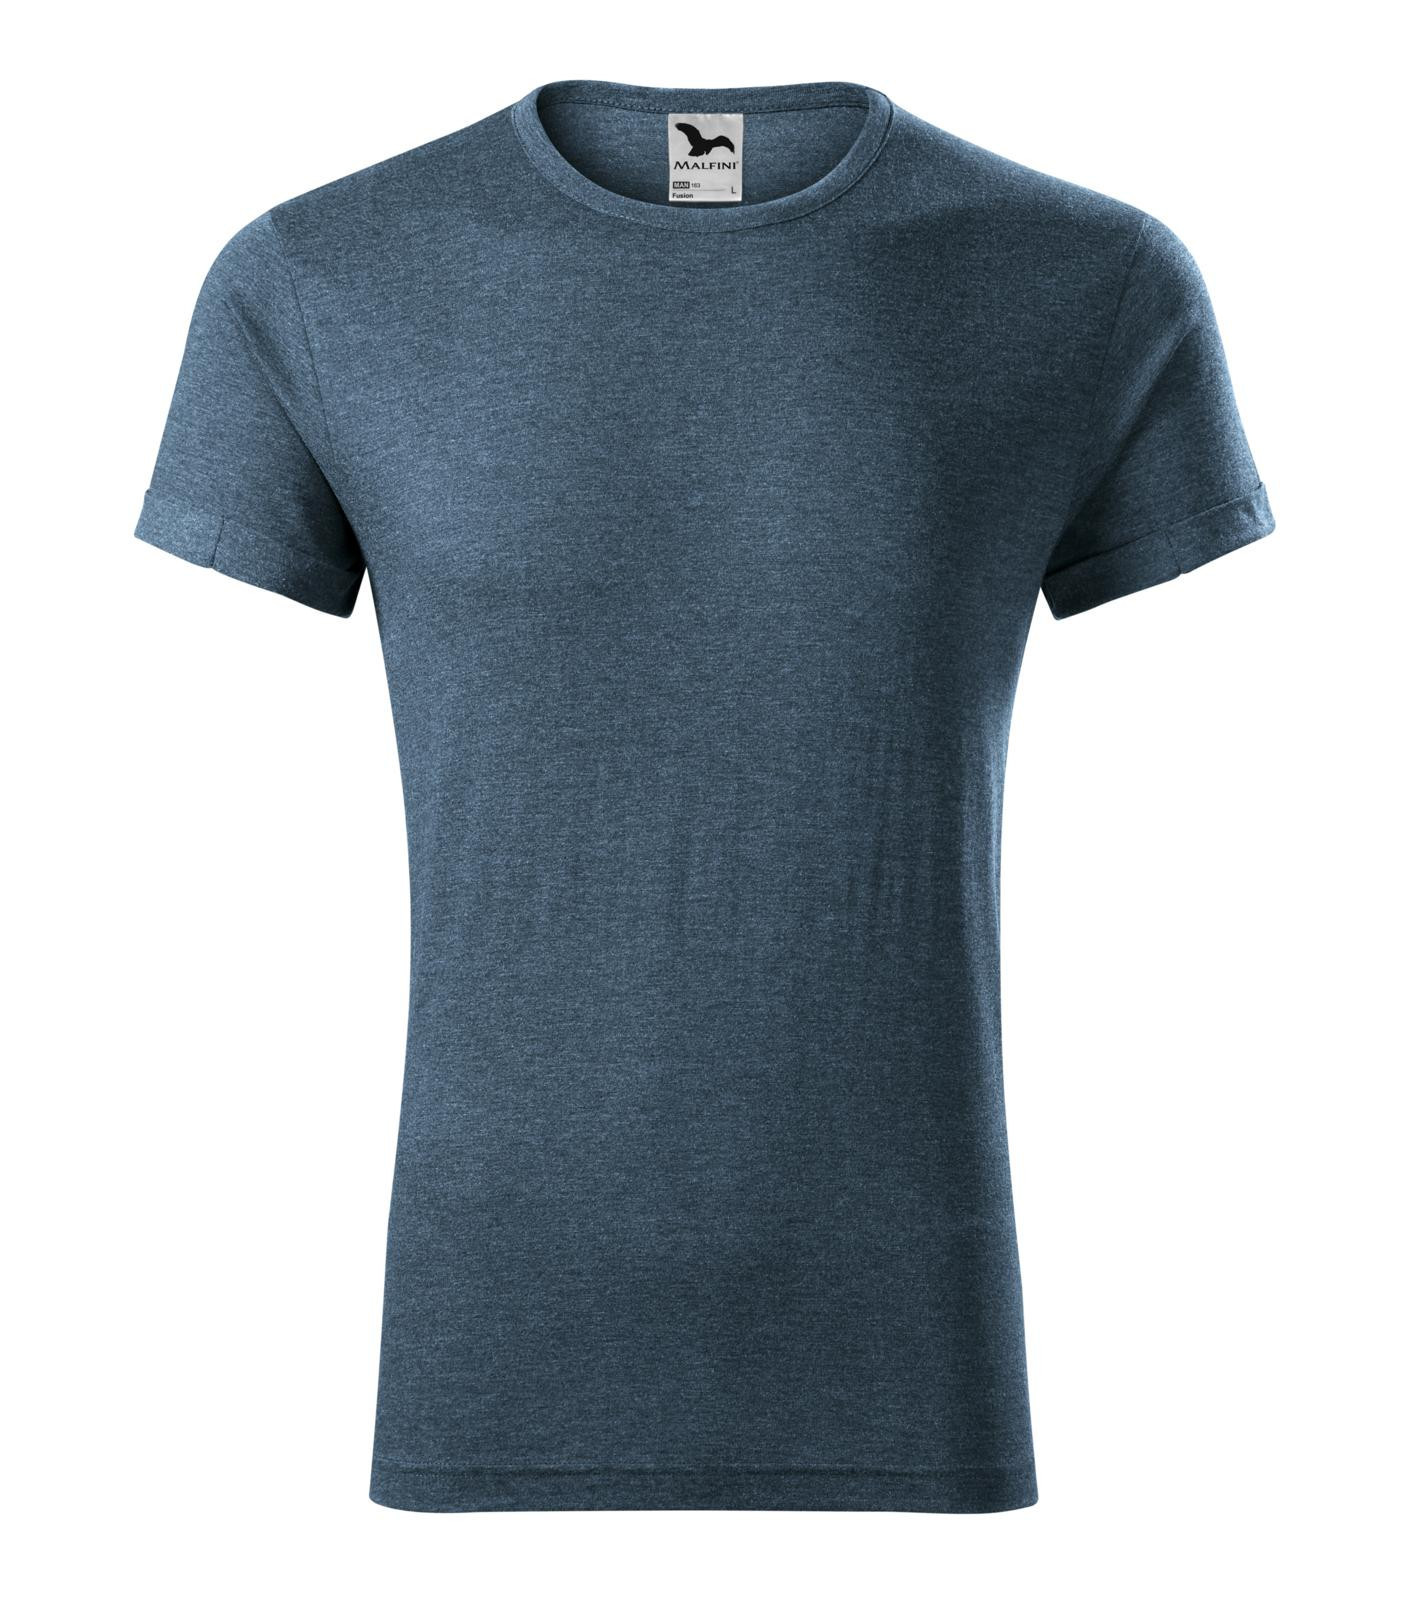 Pánske tričko Malfini Fusion 163 - veľkosť: XXL, farba: tmavý denim melír